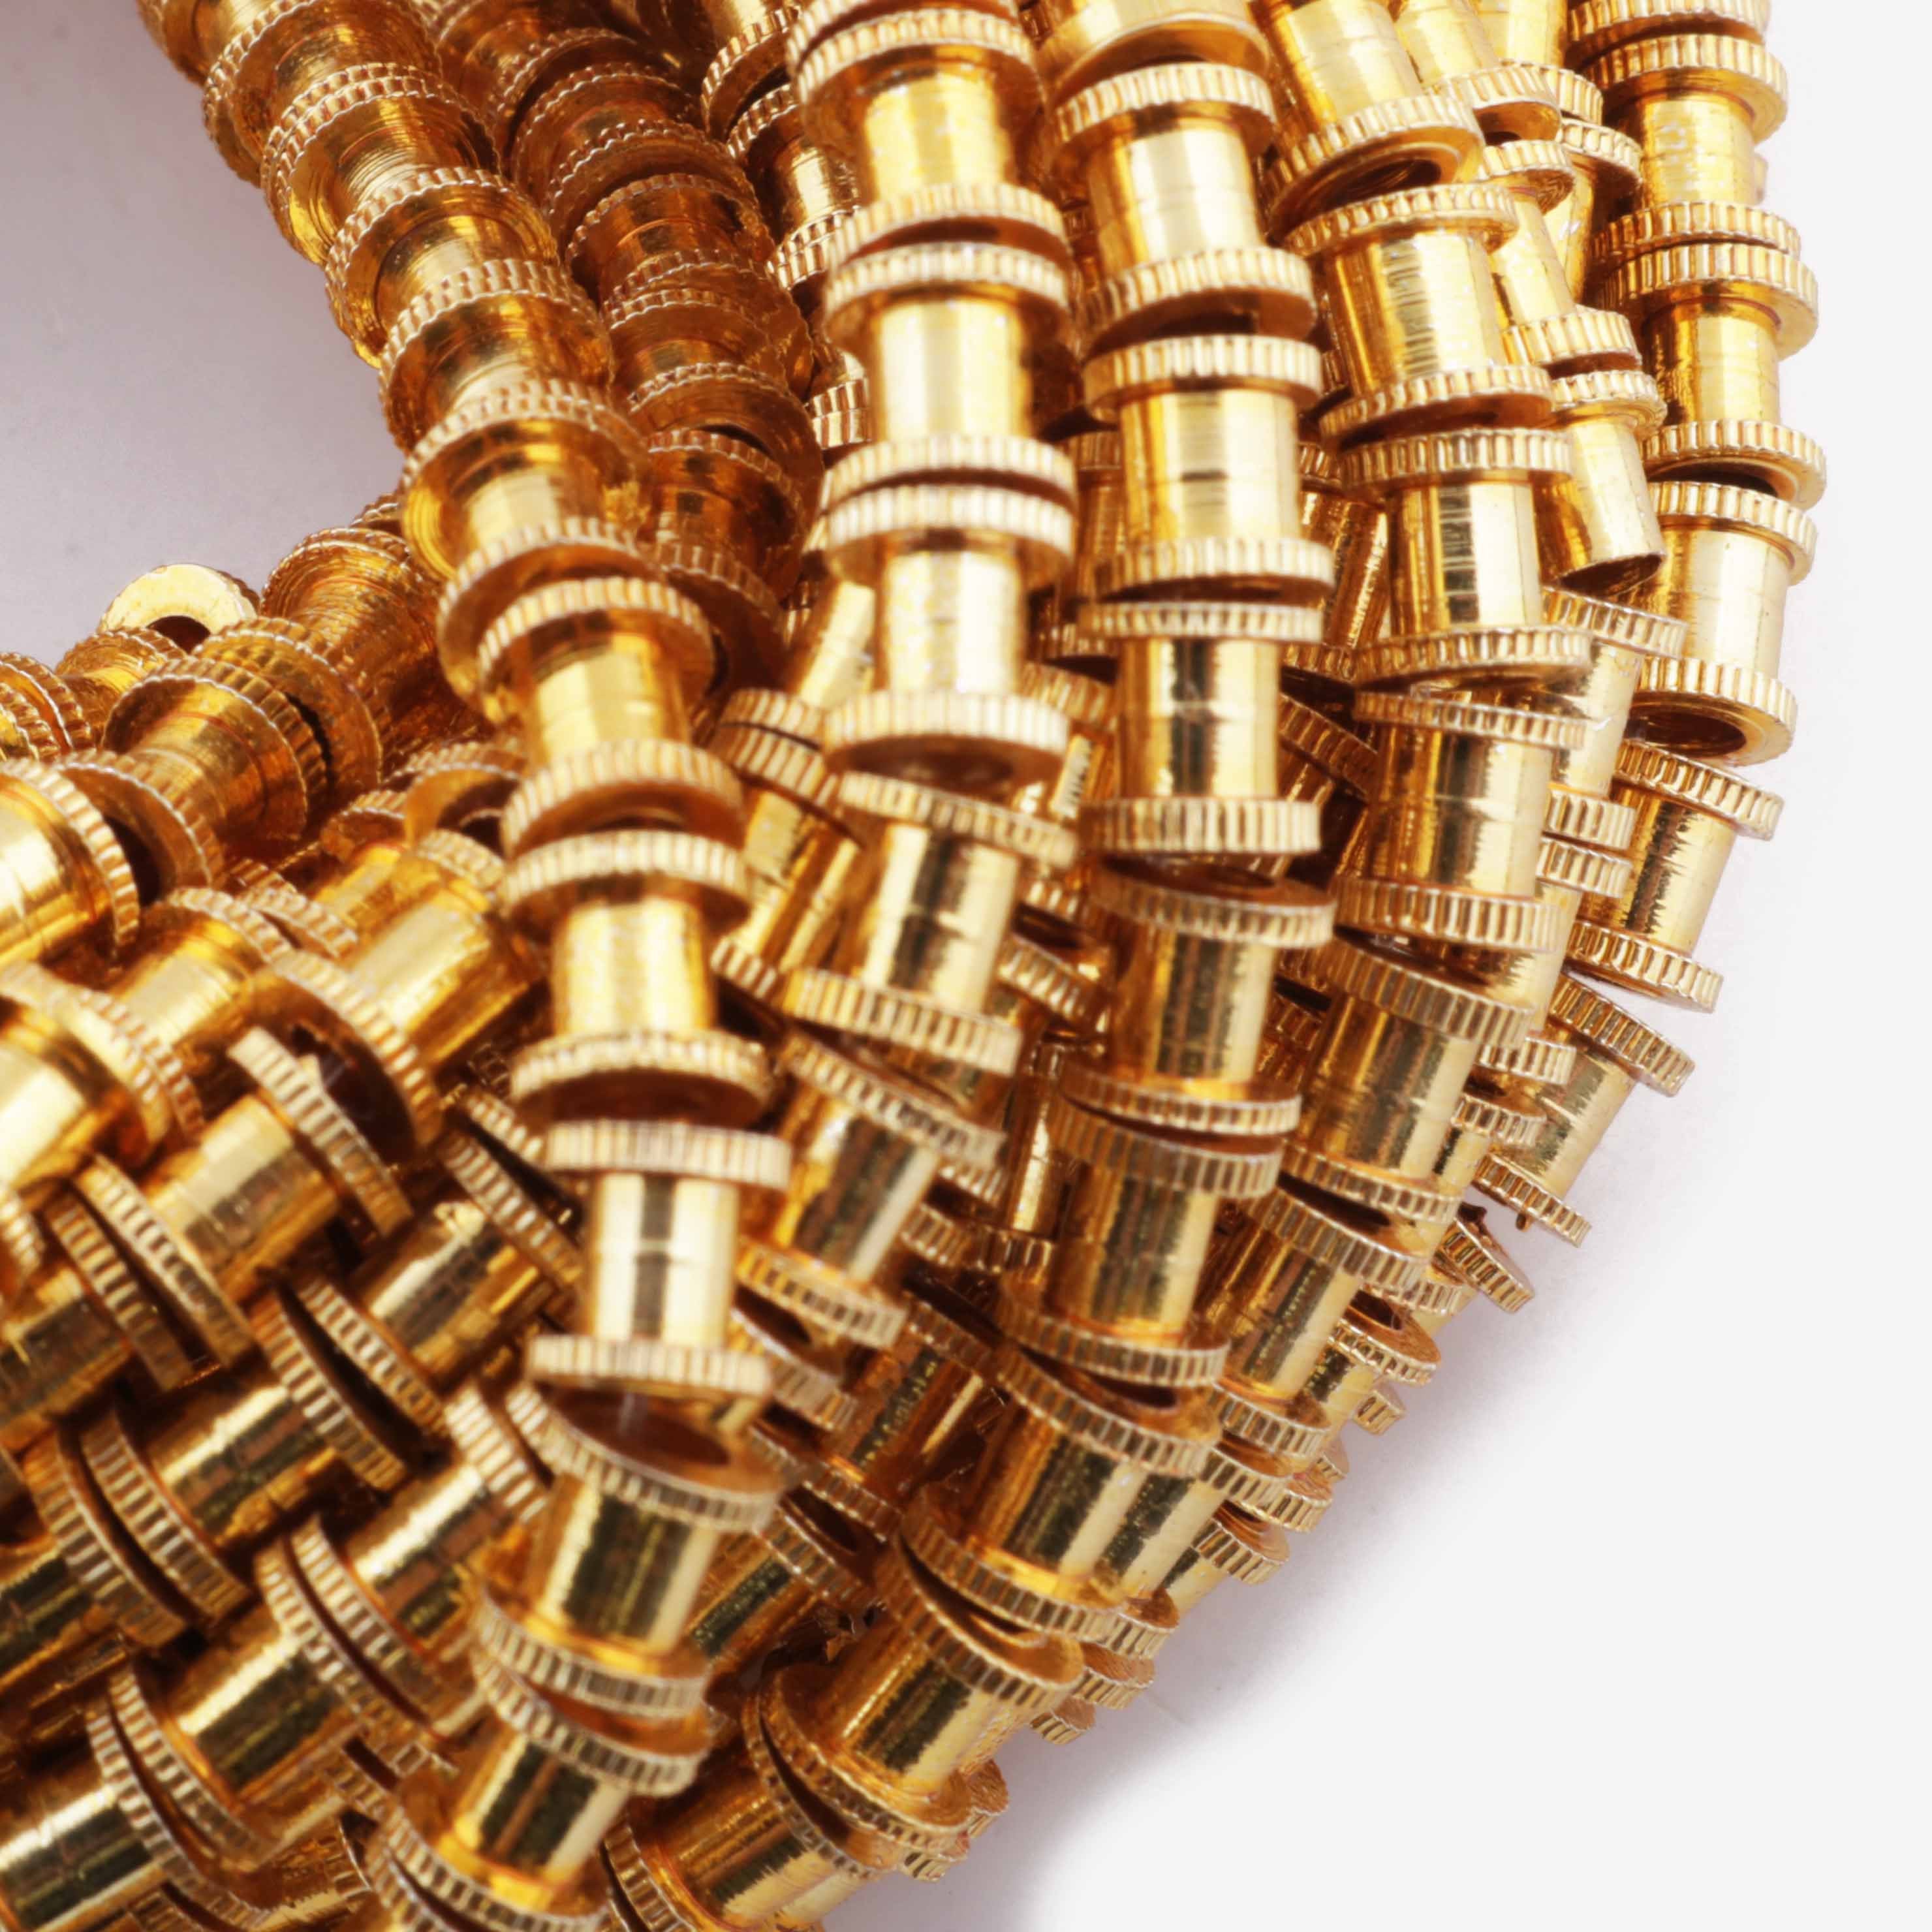 2 Strands 24k Gold Plated Designer Copper Casting Fancy Beads